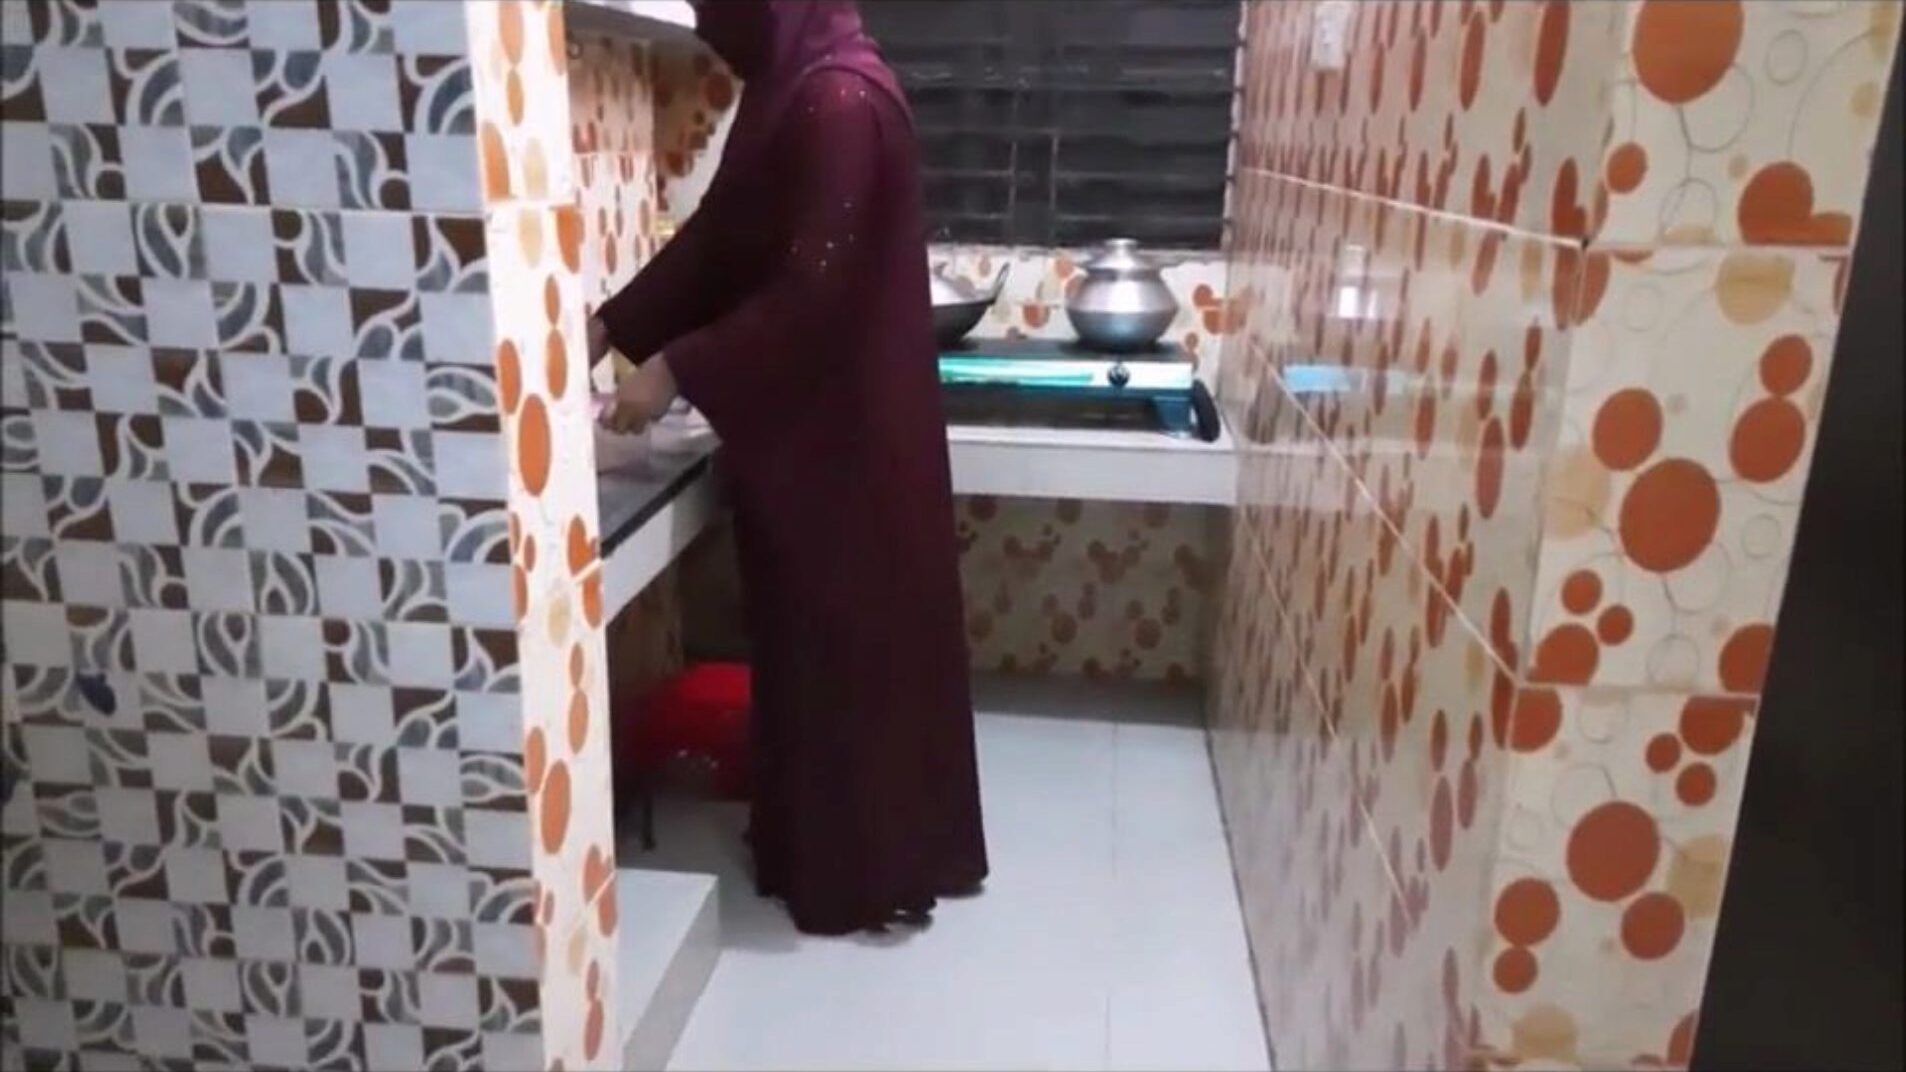 cumnată musulmană dracu bucătărie cu cumnatul vizionează cumnată musulmană dracu bucătărie cu cumnat film p-1 pe xhamster - selecția supremă de episoade cu tuburi de pornografie hd indian arabă gratuite